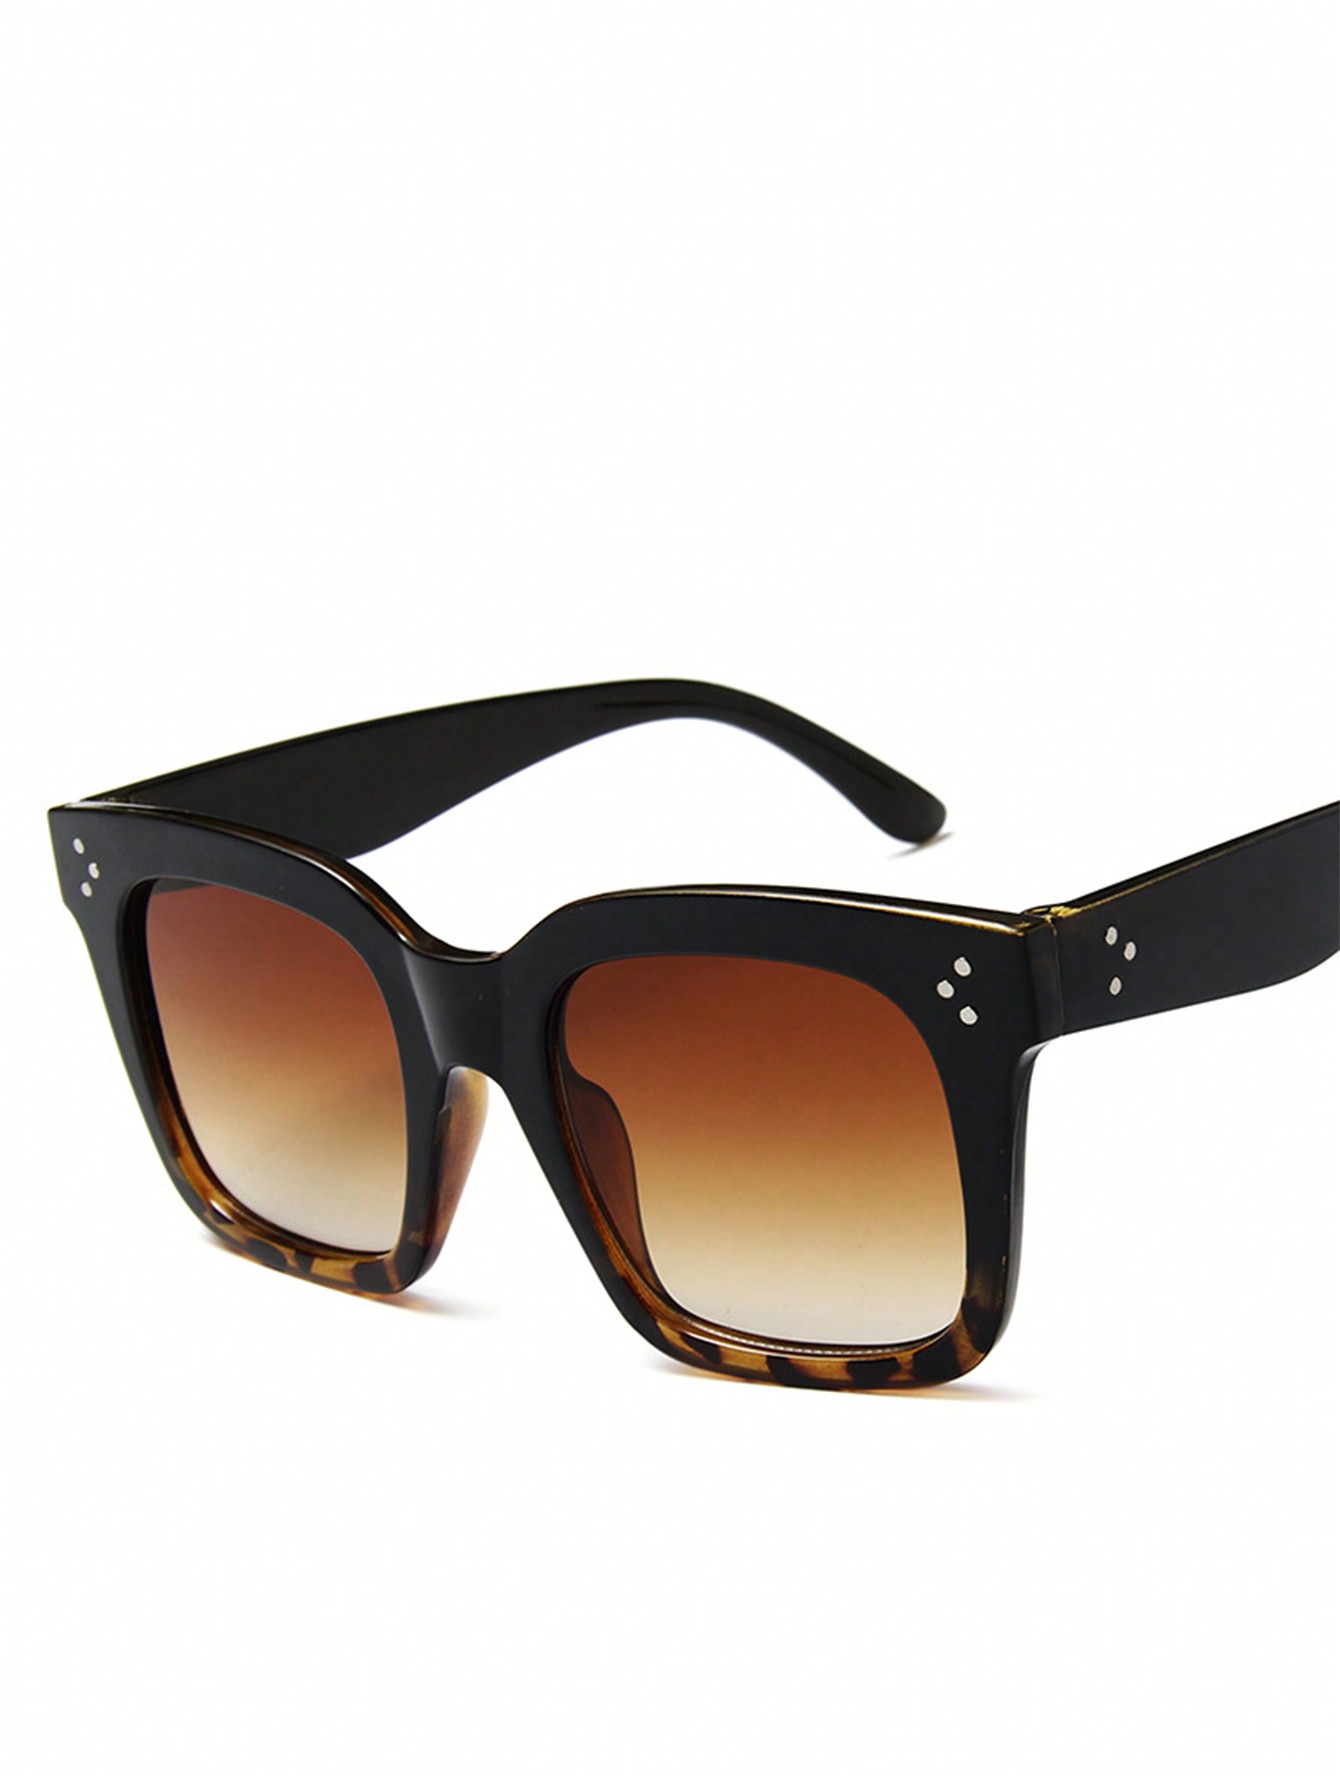 1шт Черные модные солнцезащитные очки в квадратной оправе с цветными зеркальными линзами